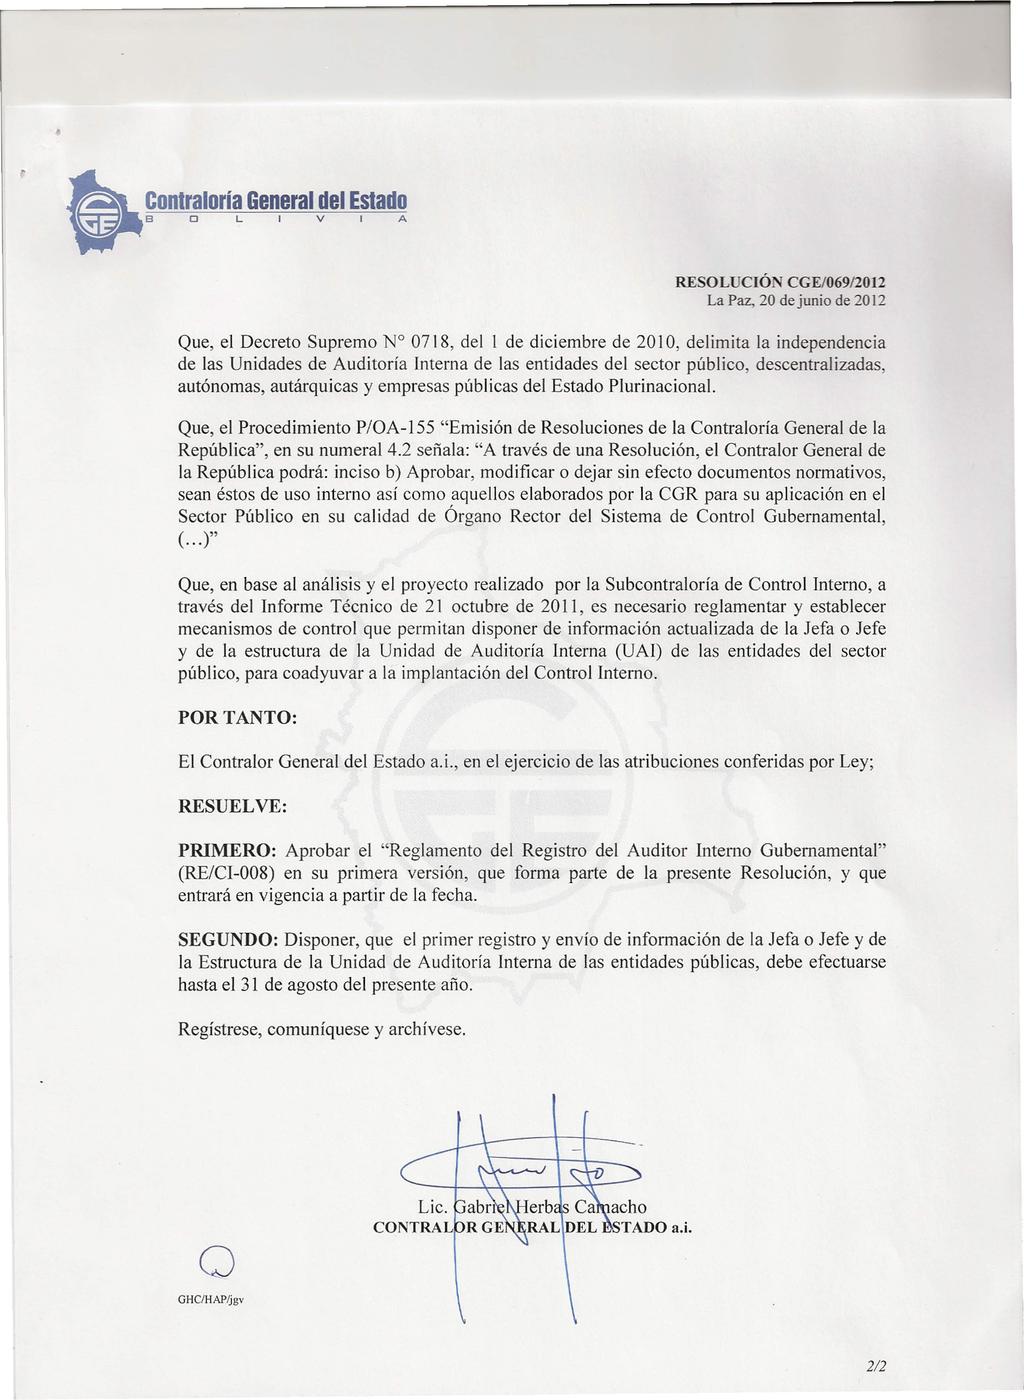 RESOLUCIÓ CGE/069/2012 La Paz, 20 dejunio de 2012 Que, el Decreto Supremo N 0718, del 1 de diciembre de 2010, delimita la independencia de las Unidades de Auditoría Interna de las entidades del